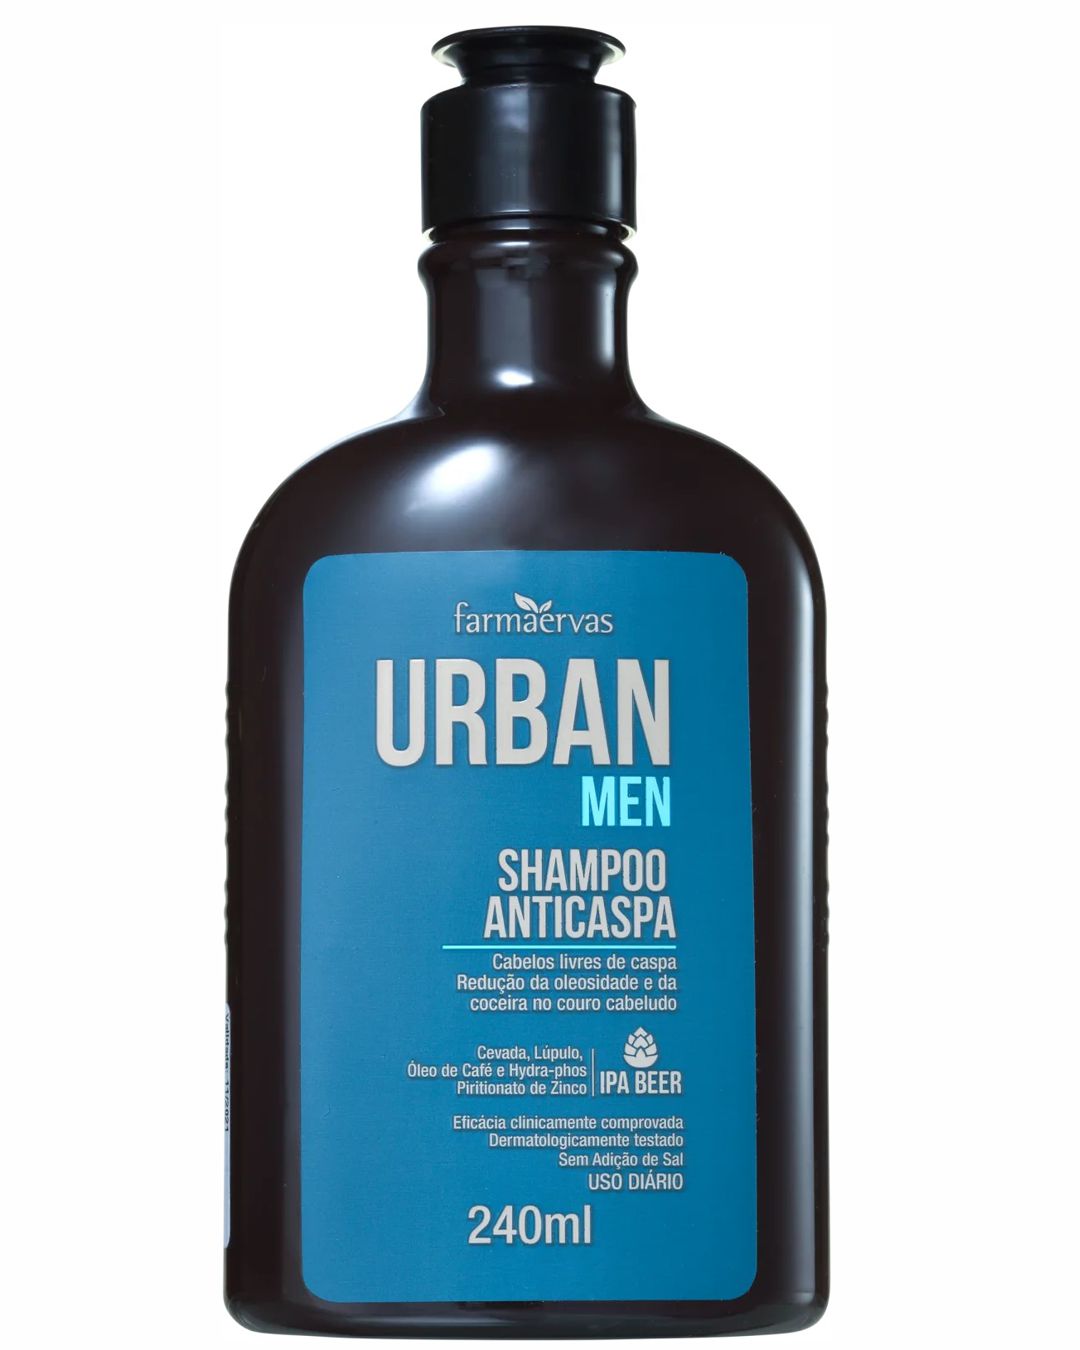 Farmaervas Shampoo Urban Men Anticaspa - 240 ml